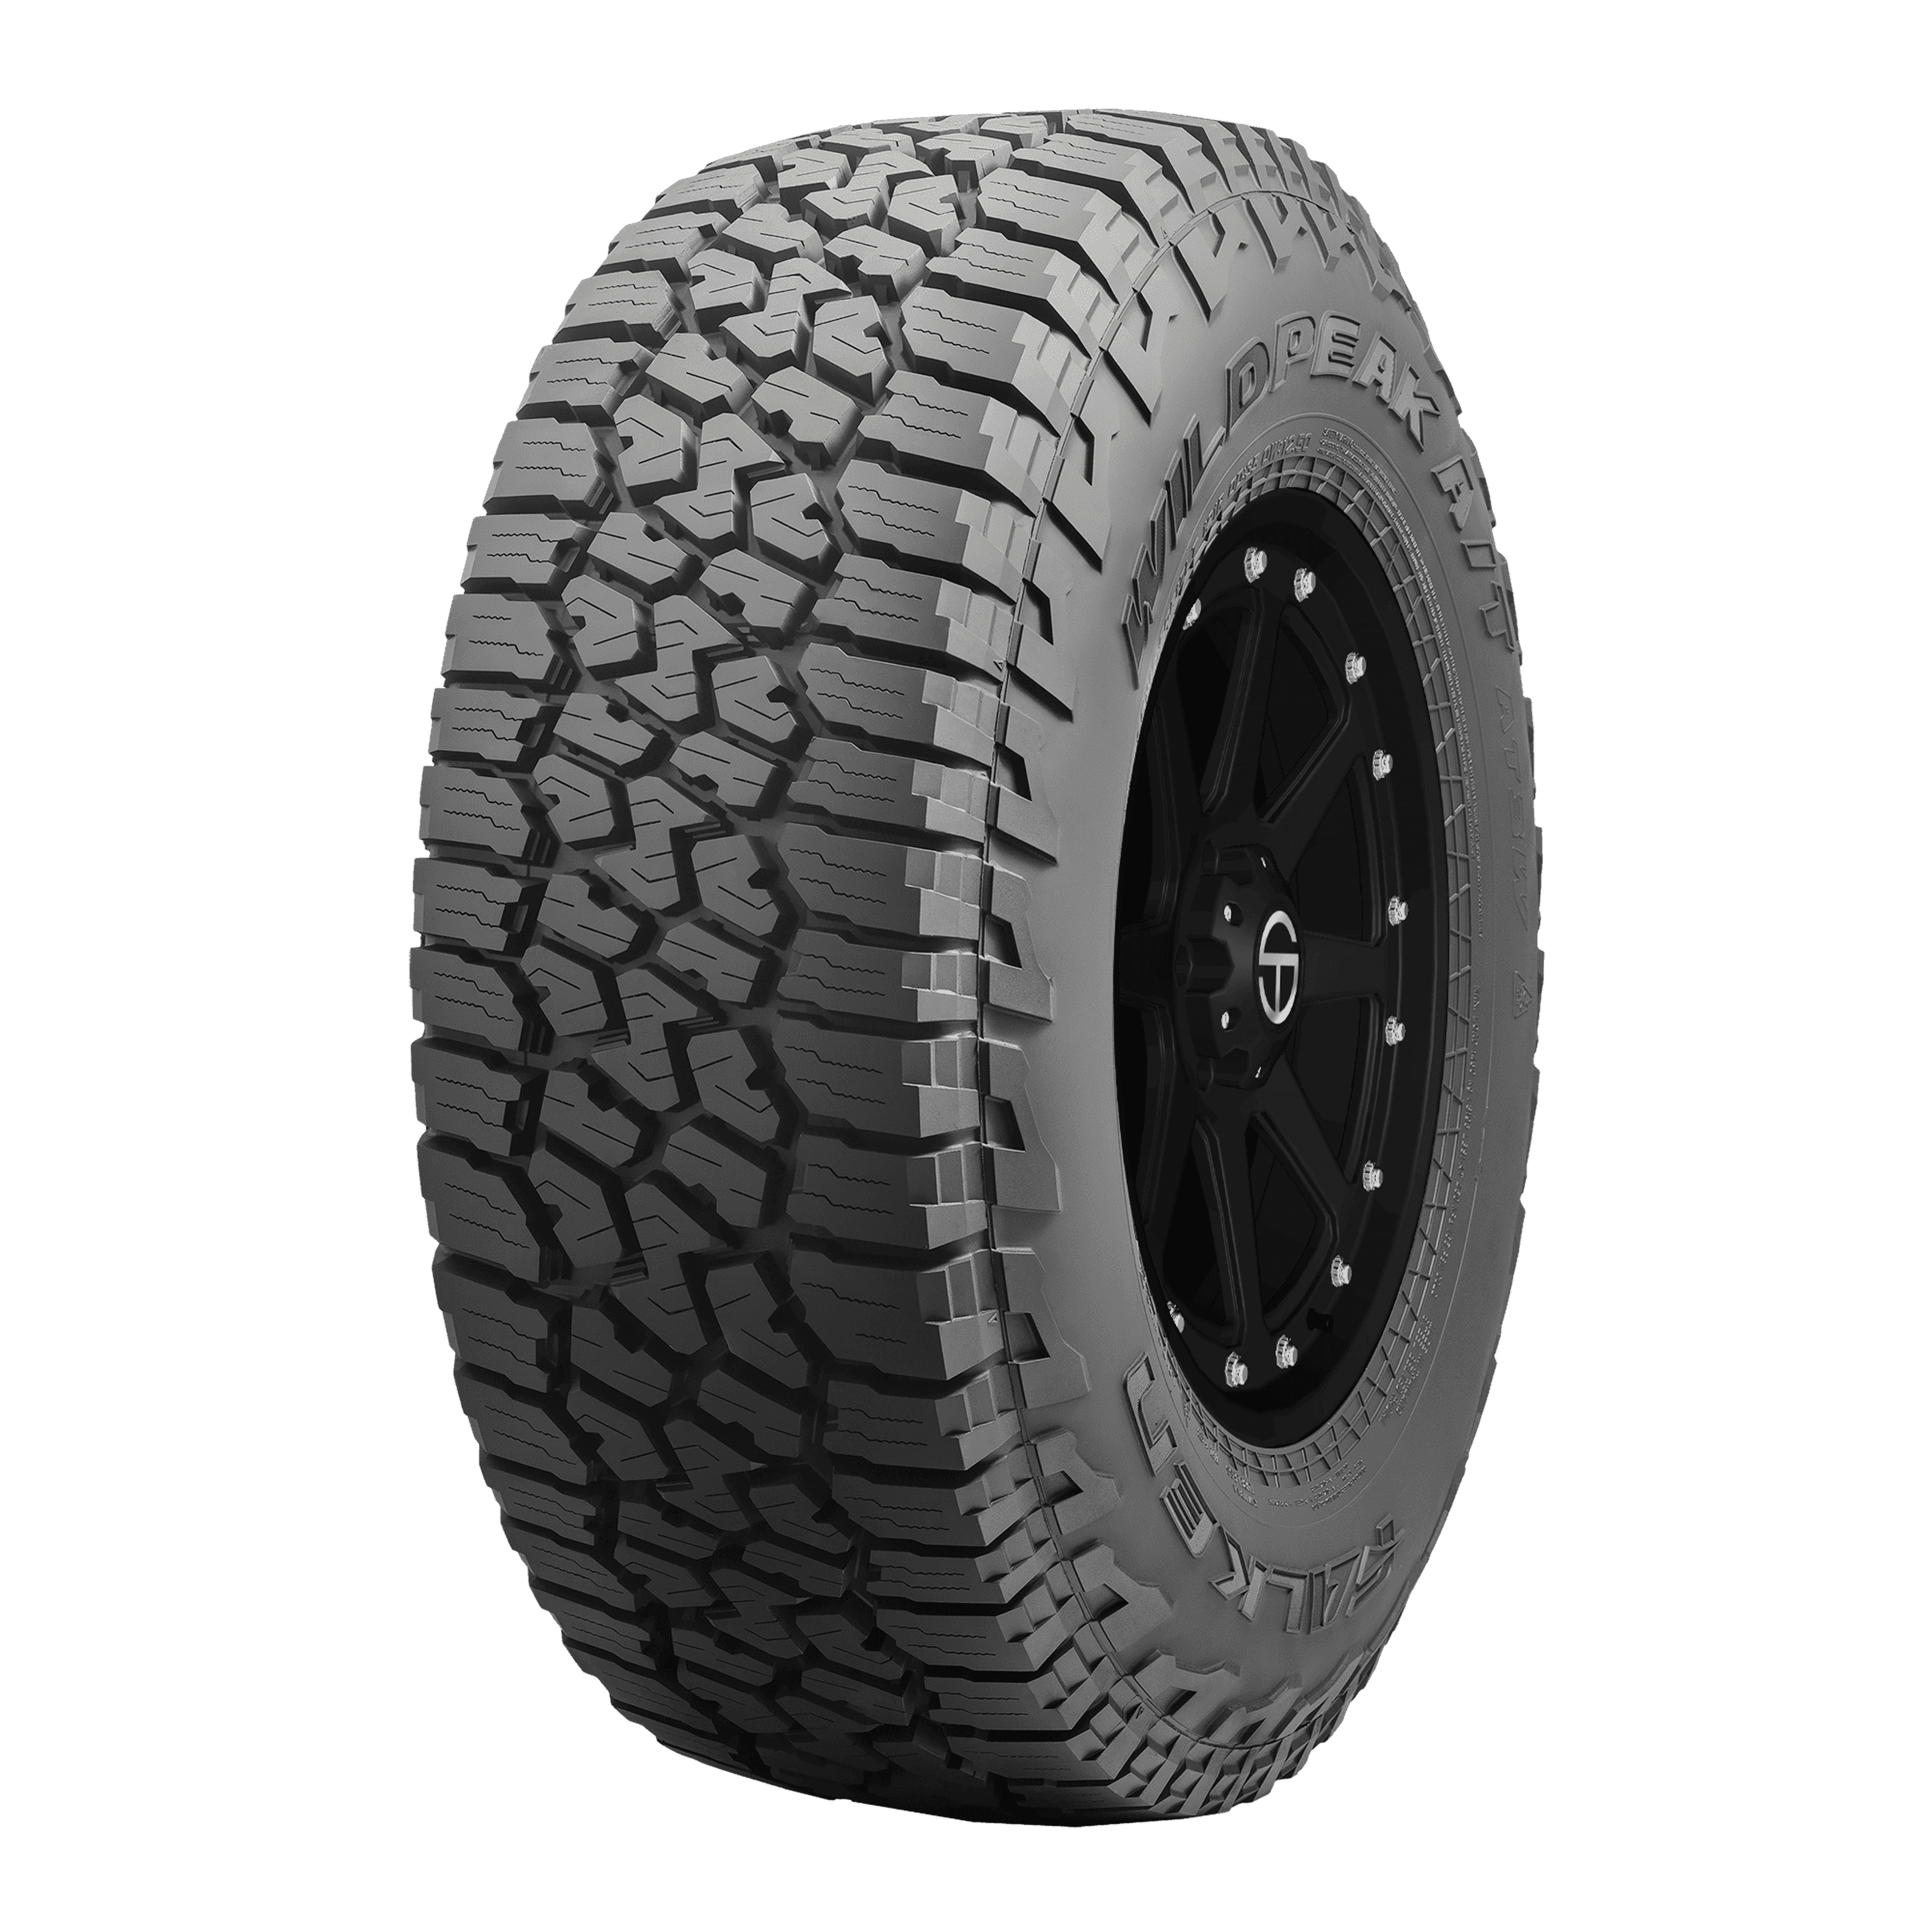 Buy Falken Wildpeak | Tires Online A/T3W SimpleTire